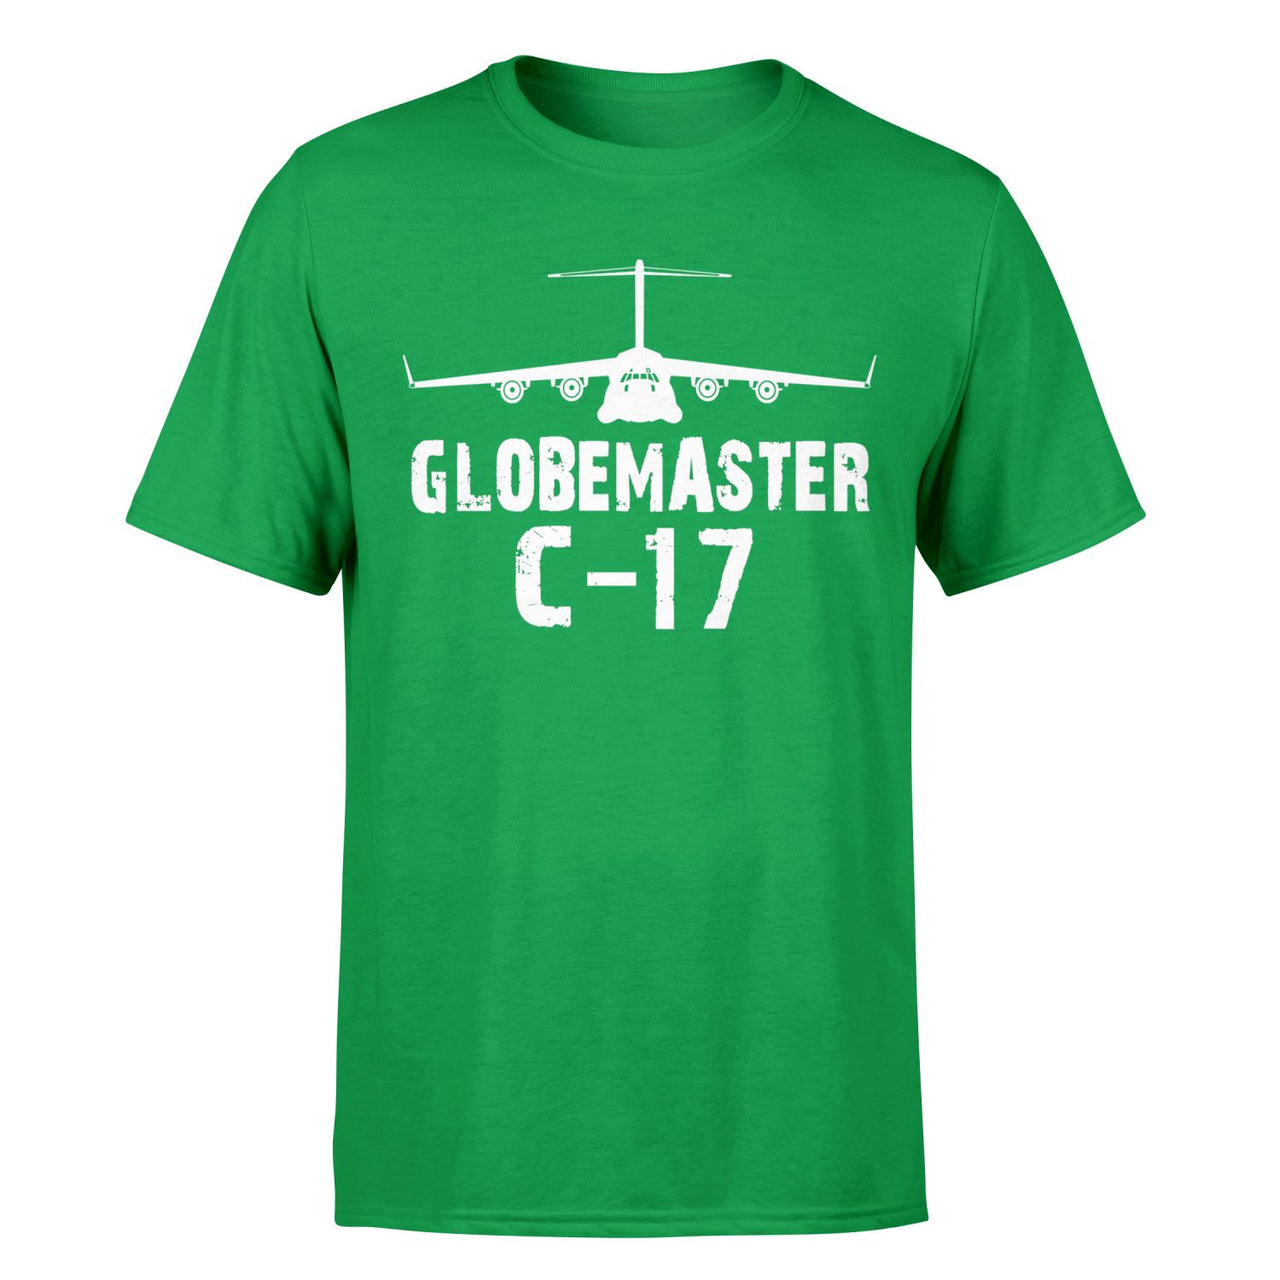 GlobeMaster C-17 & Plane Designed T-Shirts